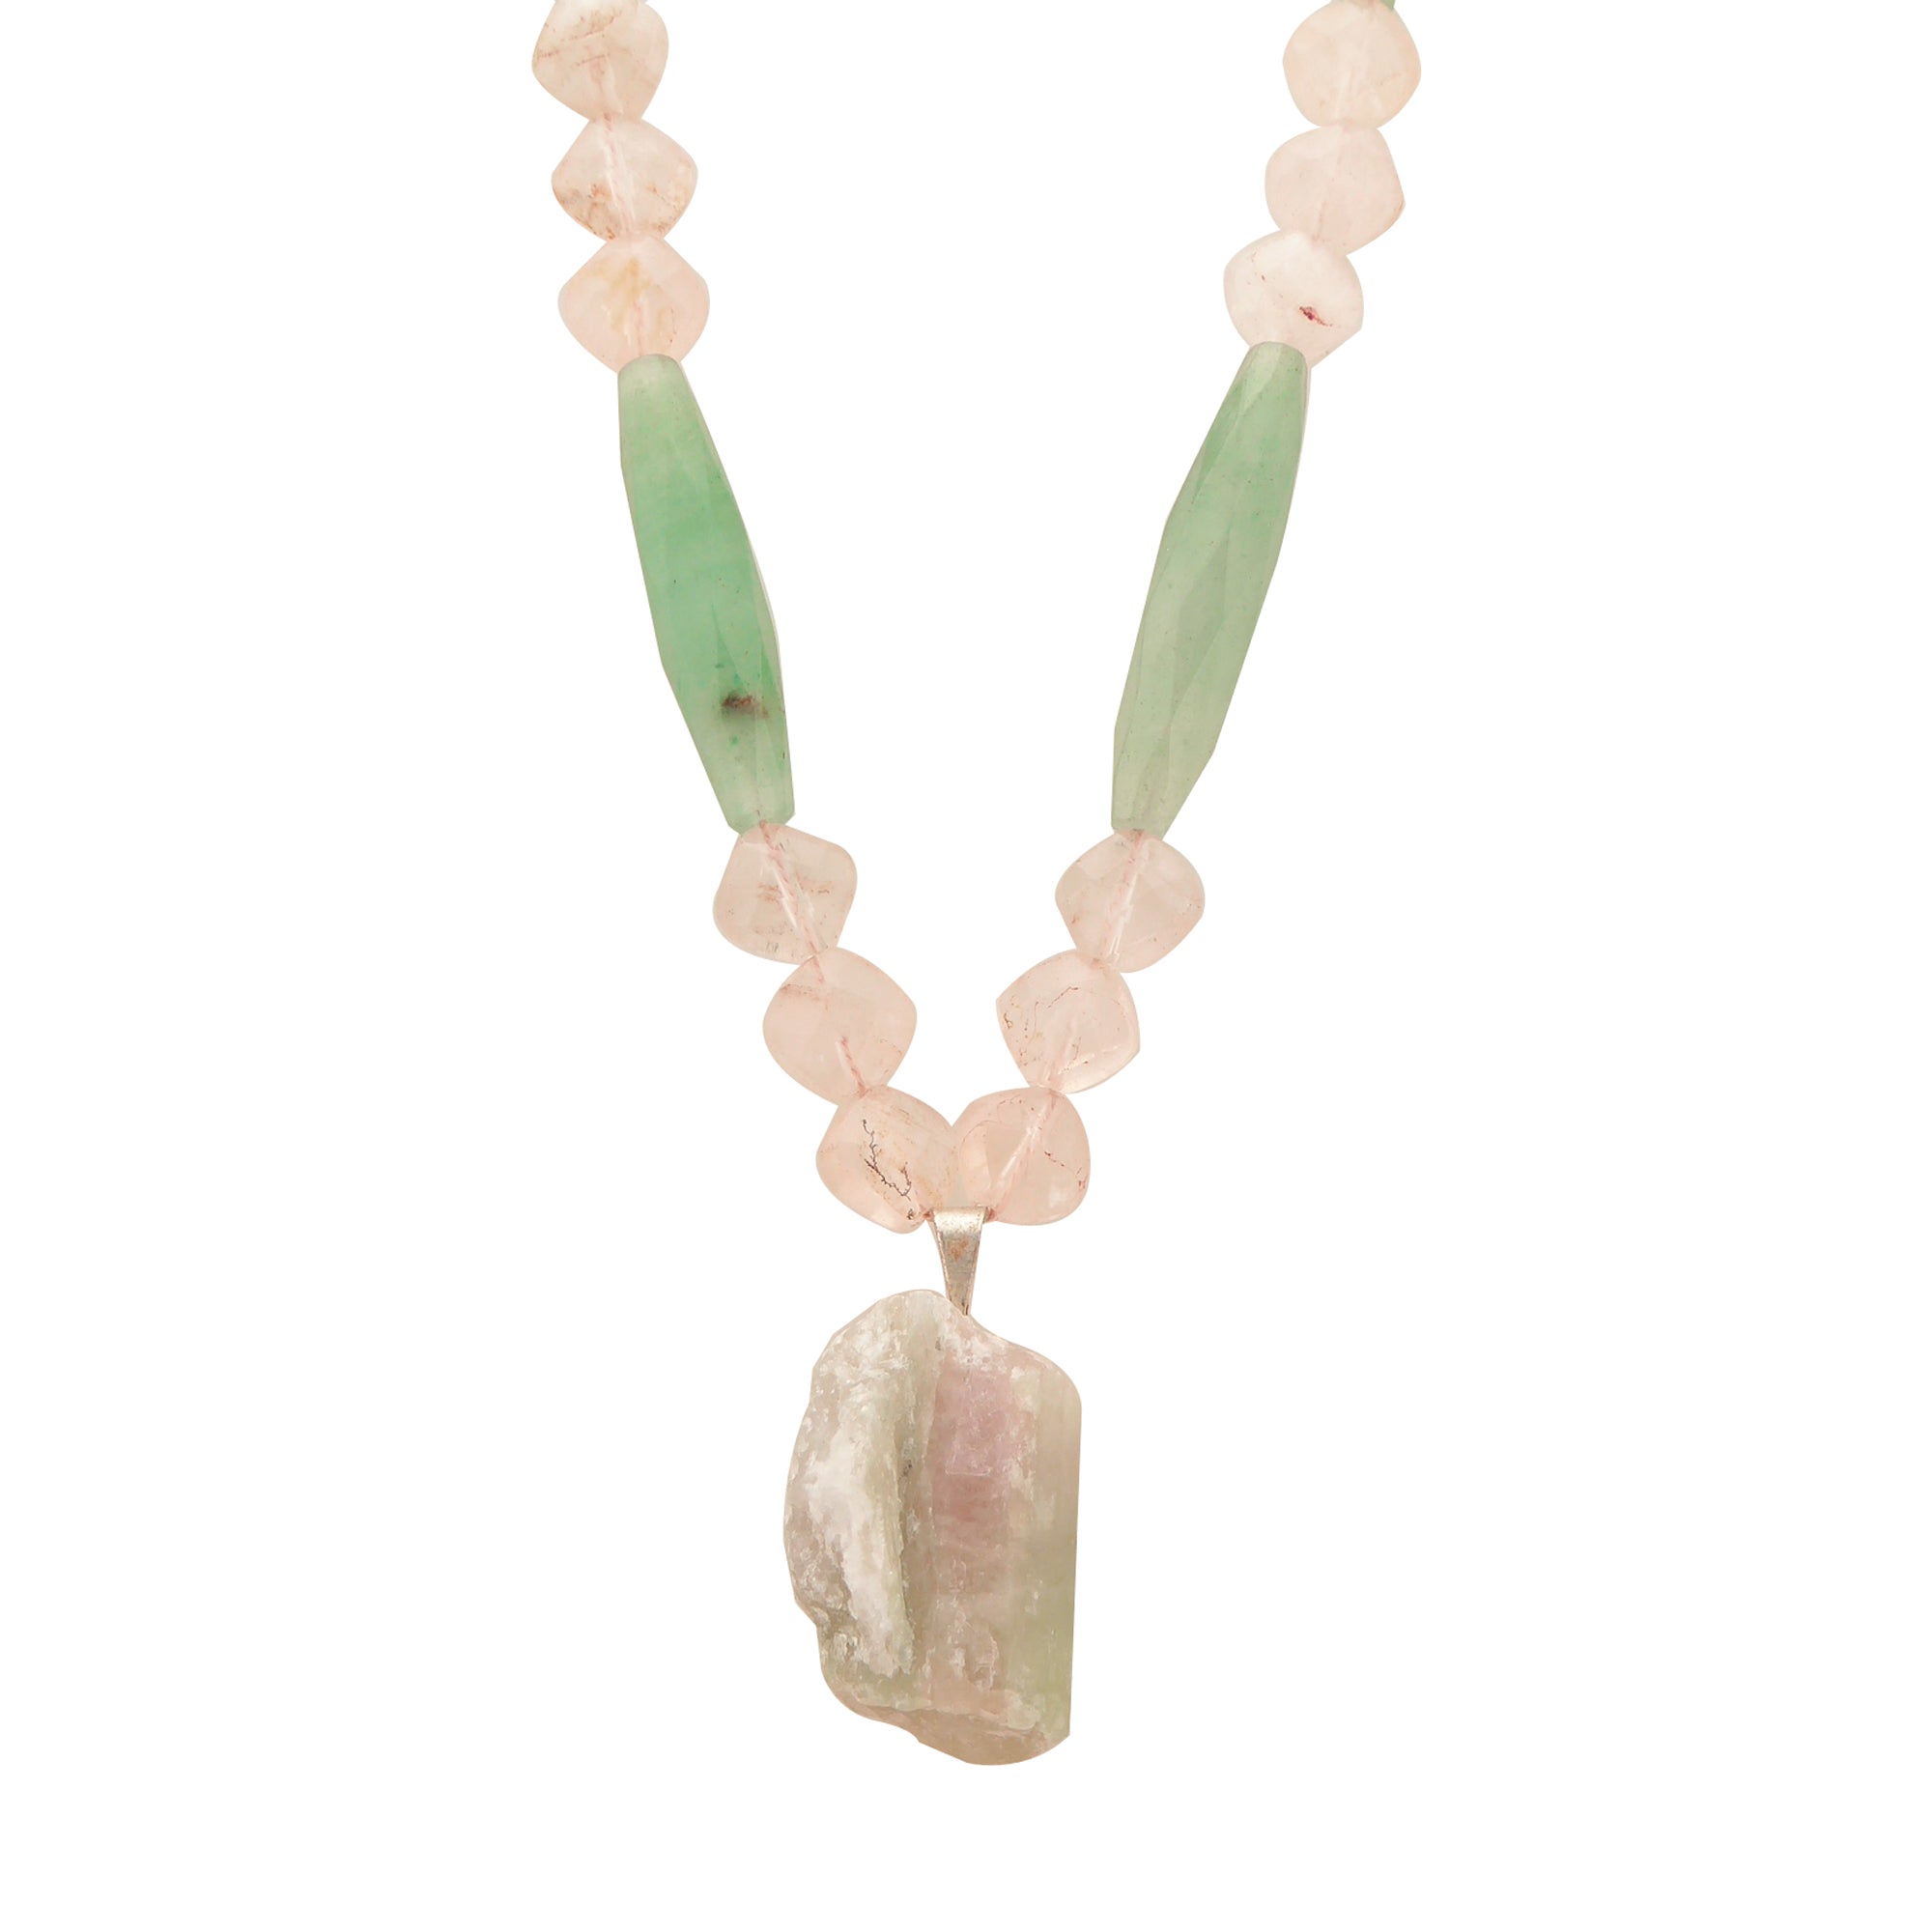 Watermelon tourmaline rose quartz green aventurine necklace by Jenny Dayco 1